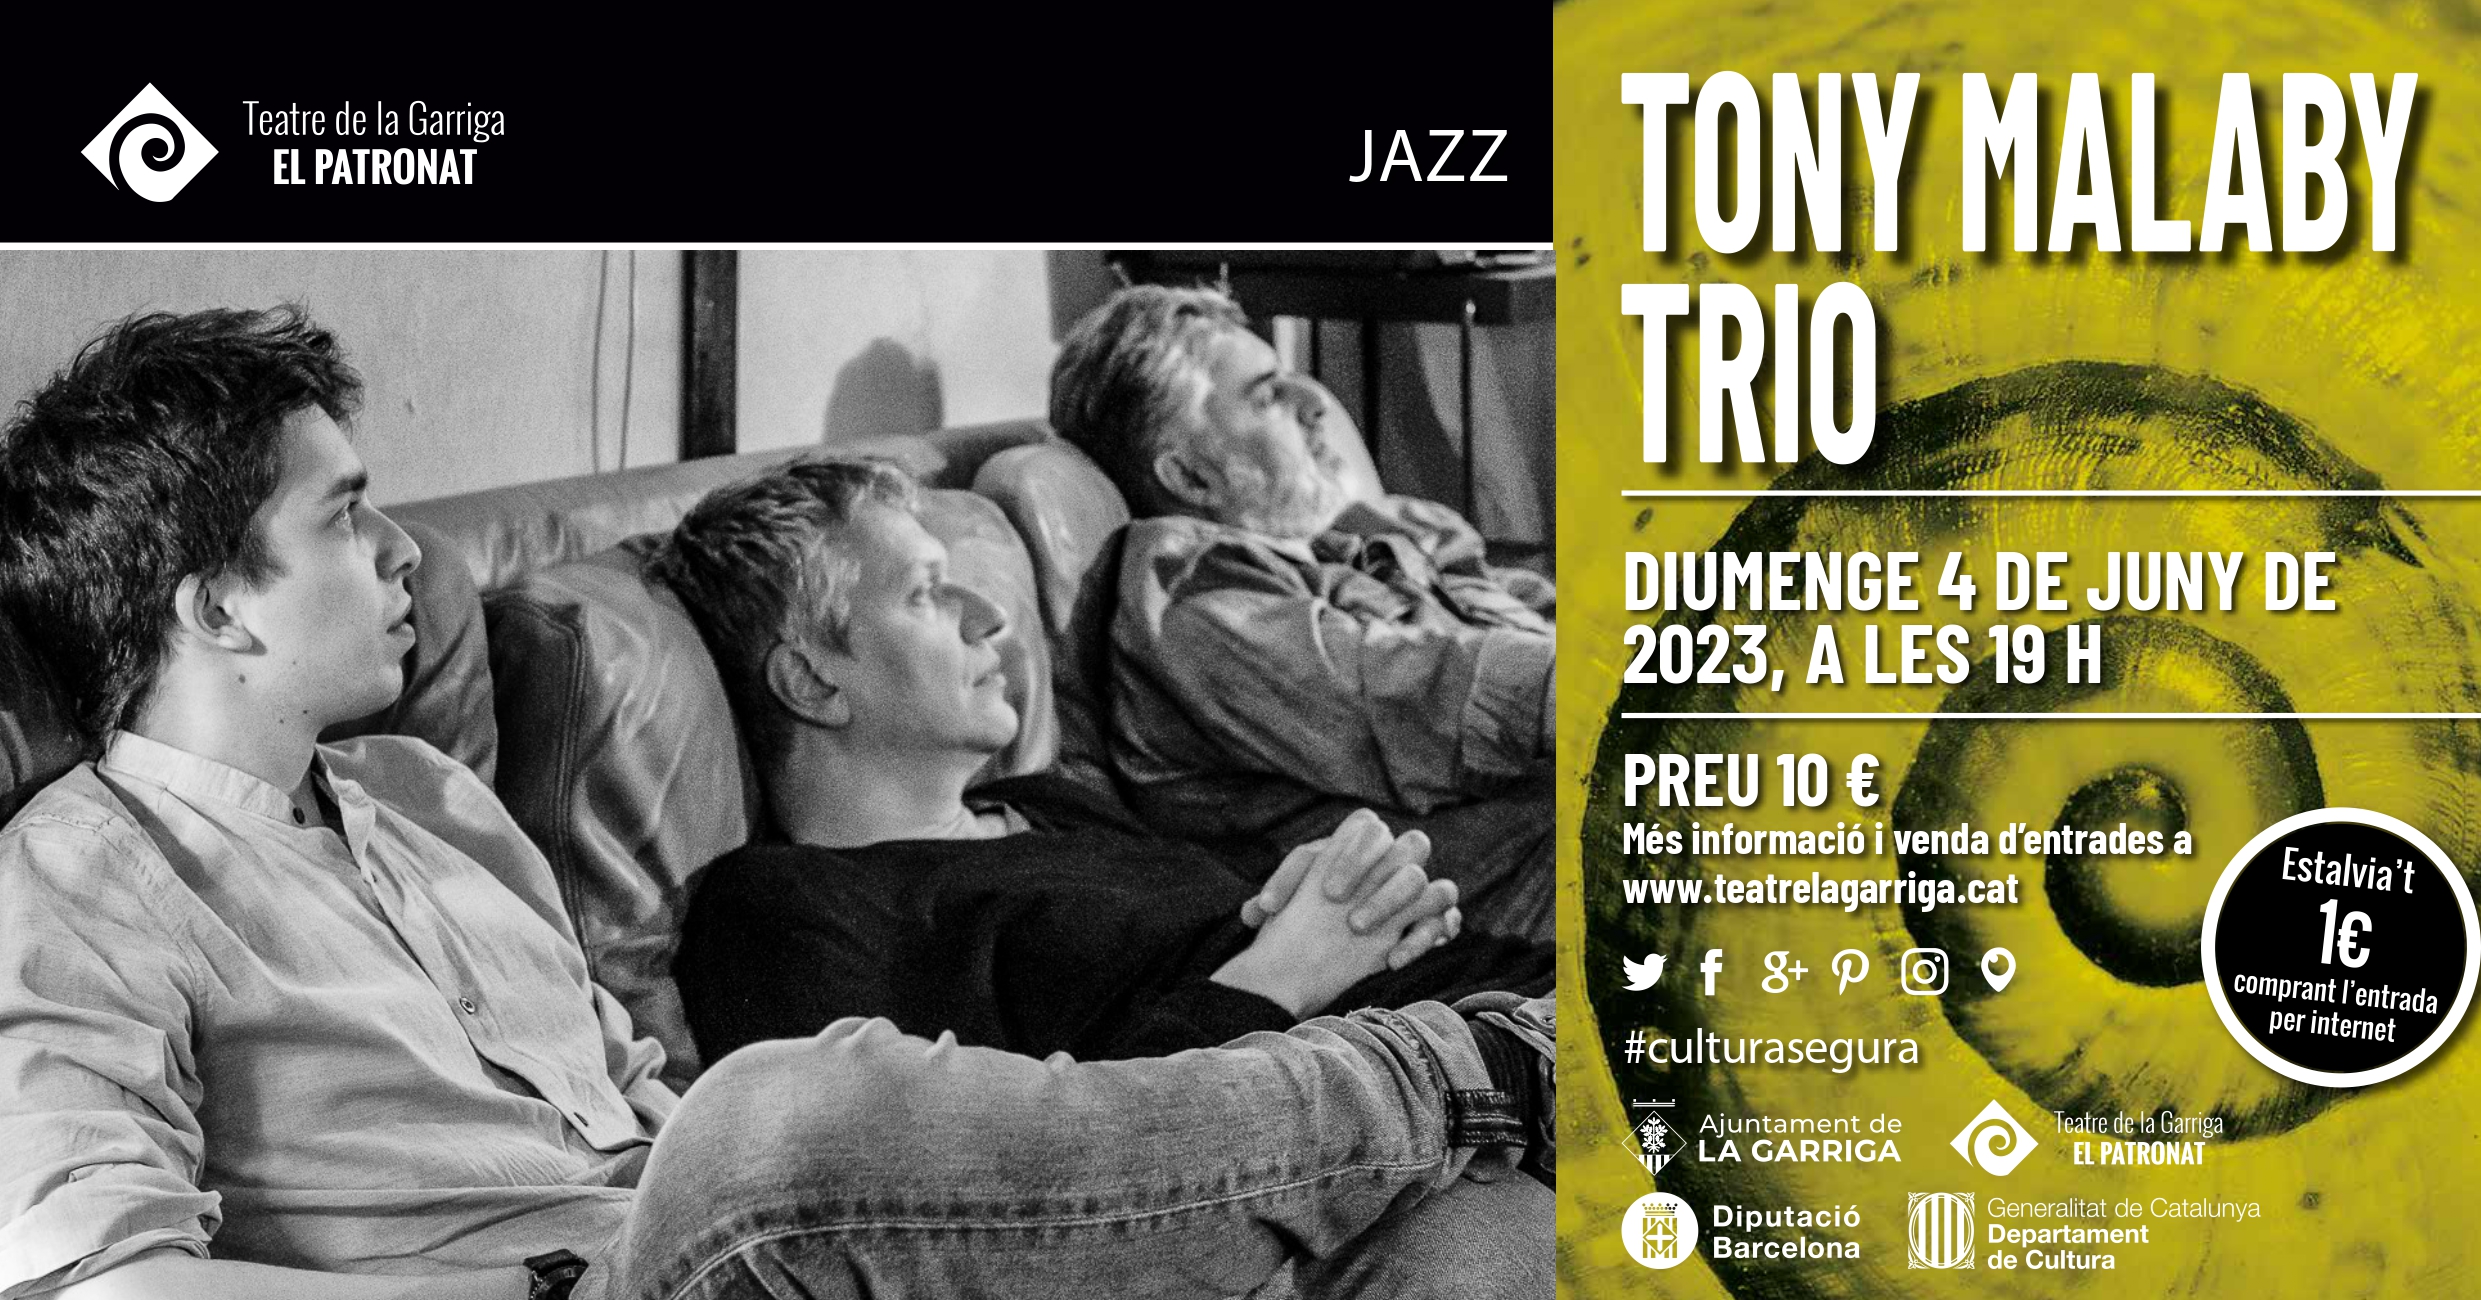 Tony Malaby Trio